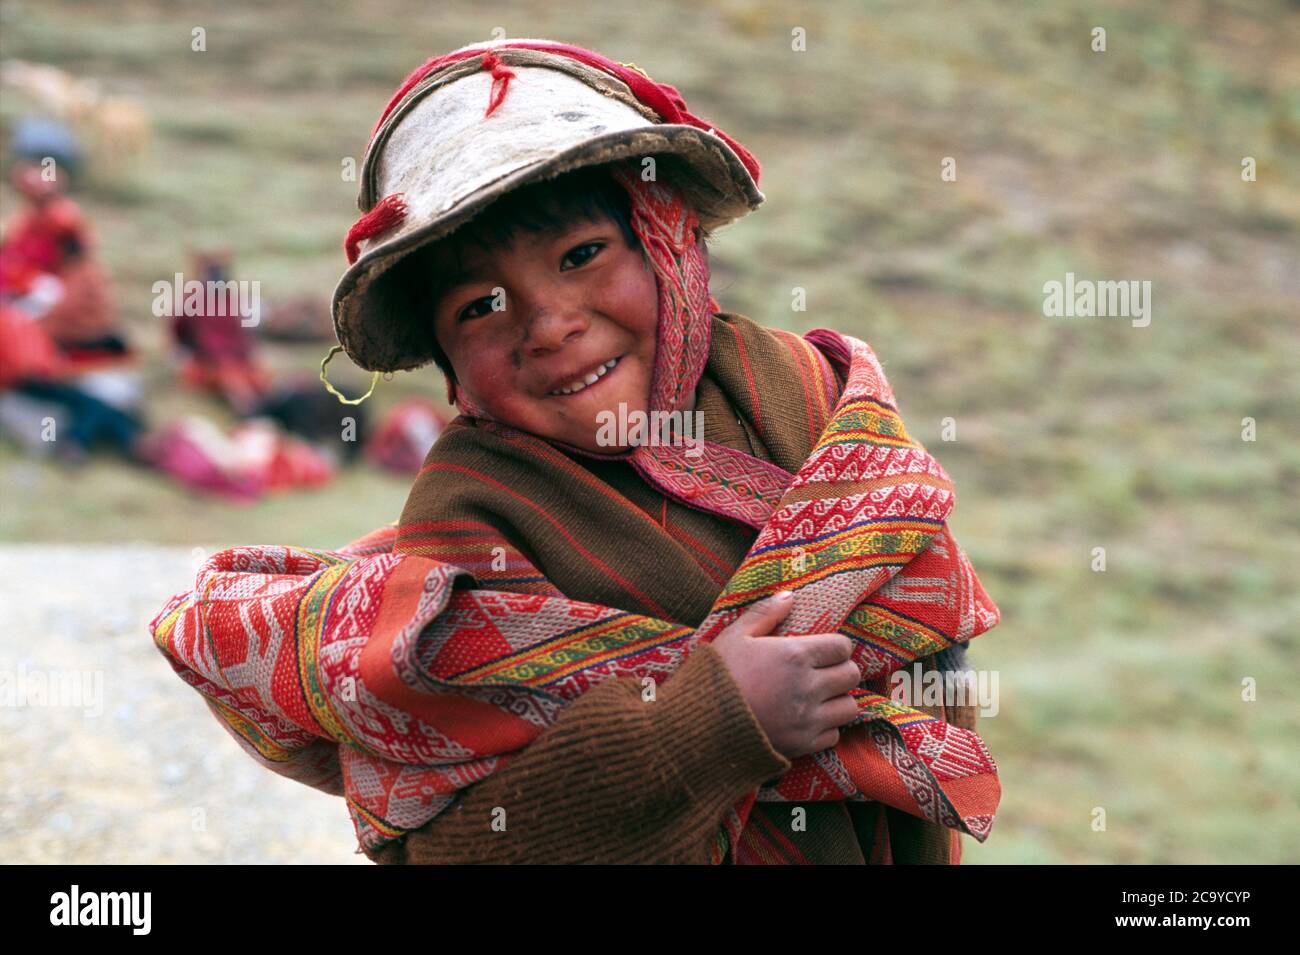 Peruvian boy smiling in traditional costume, Cusco, Peru, South America Stock Photo